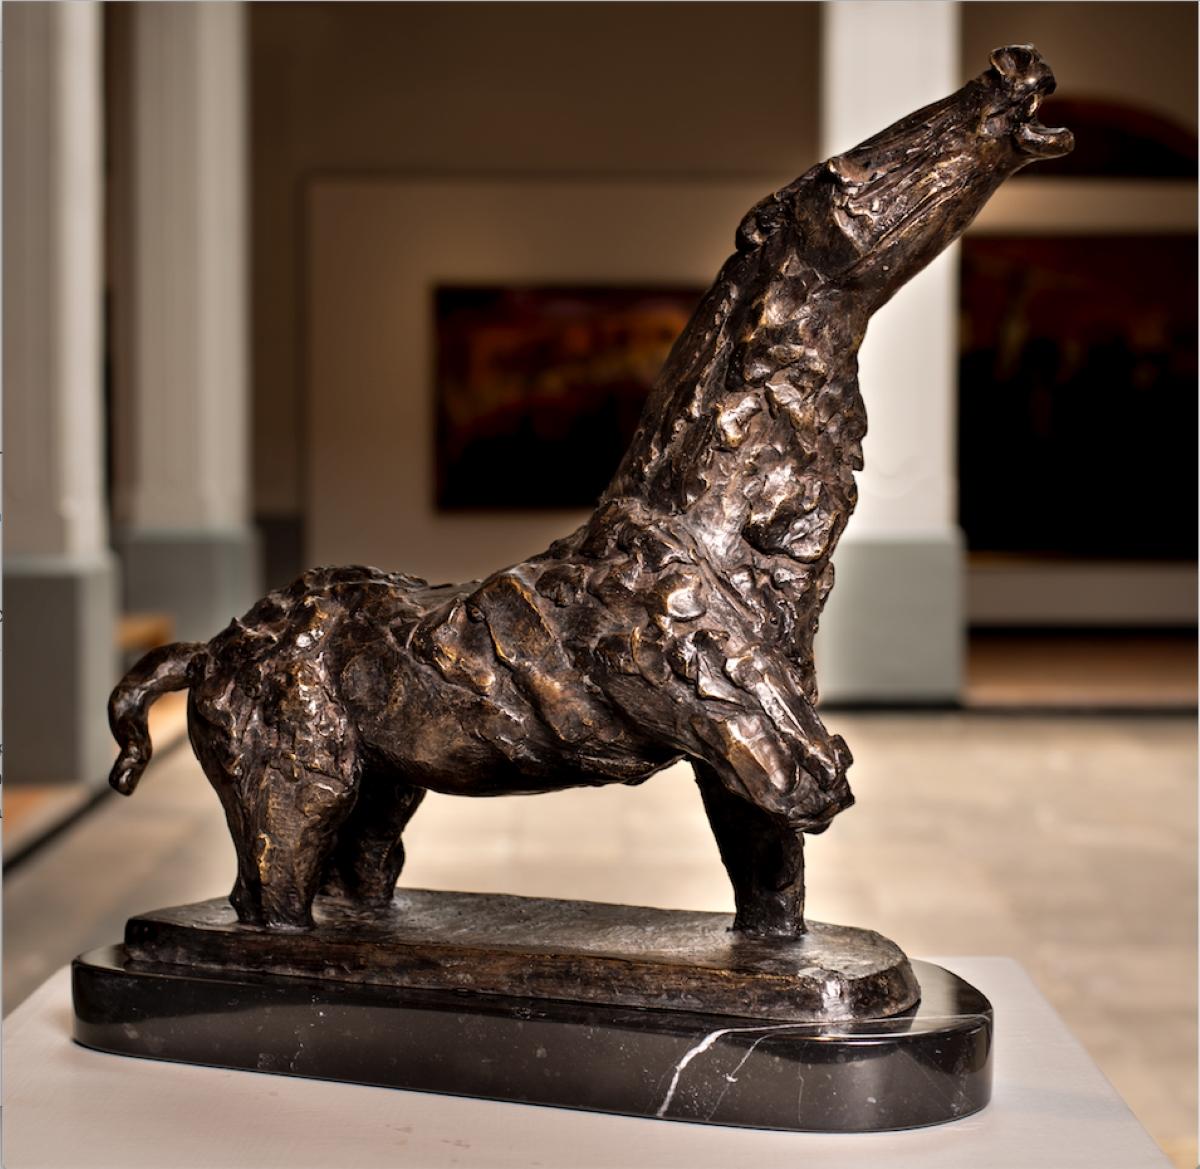 Luis Filcer Figurative Sculpture – ""Stallion"" - Bronzeskulptur eines Pferdes.